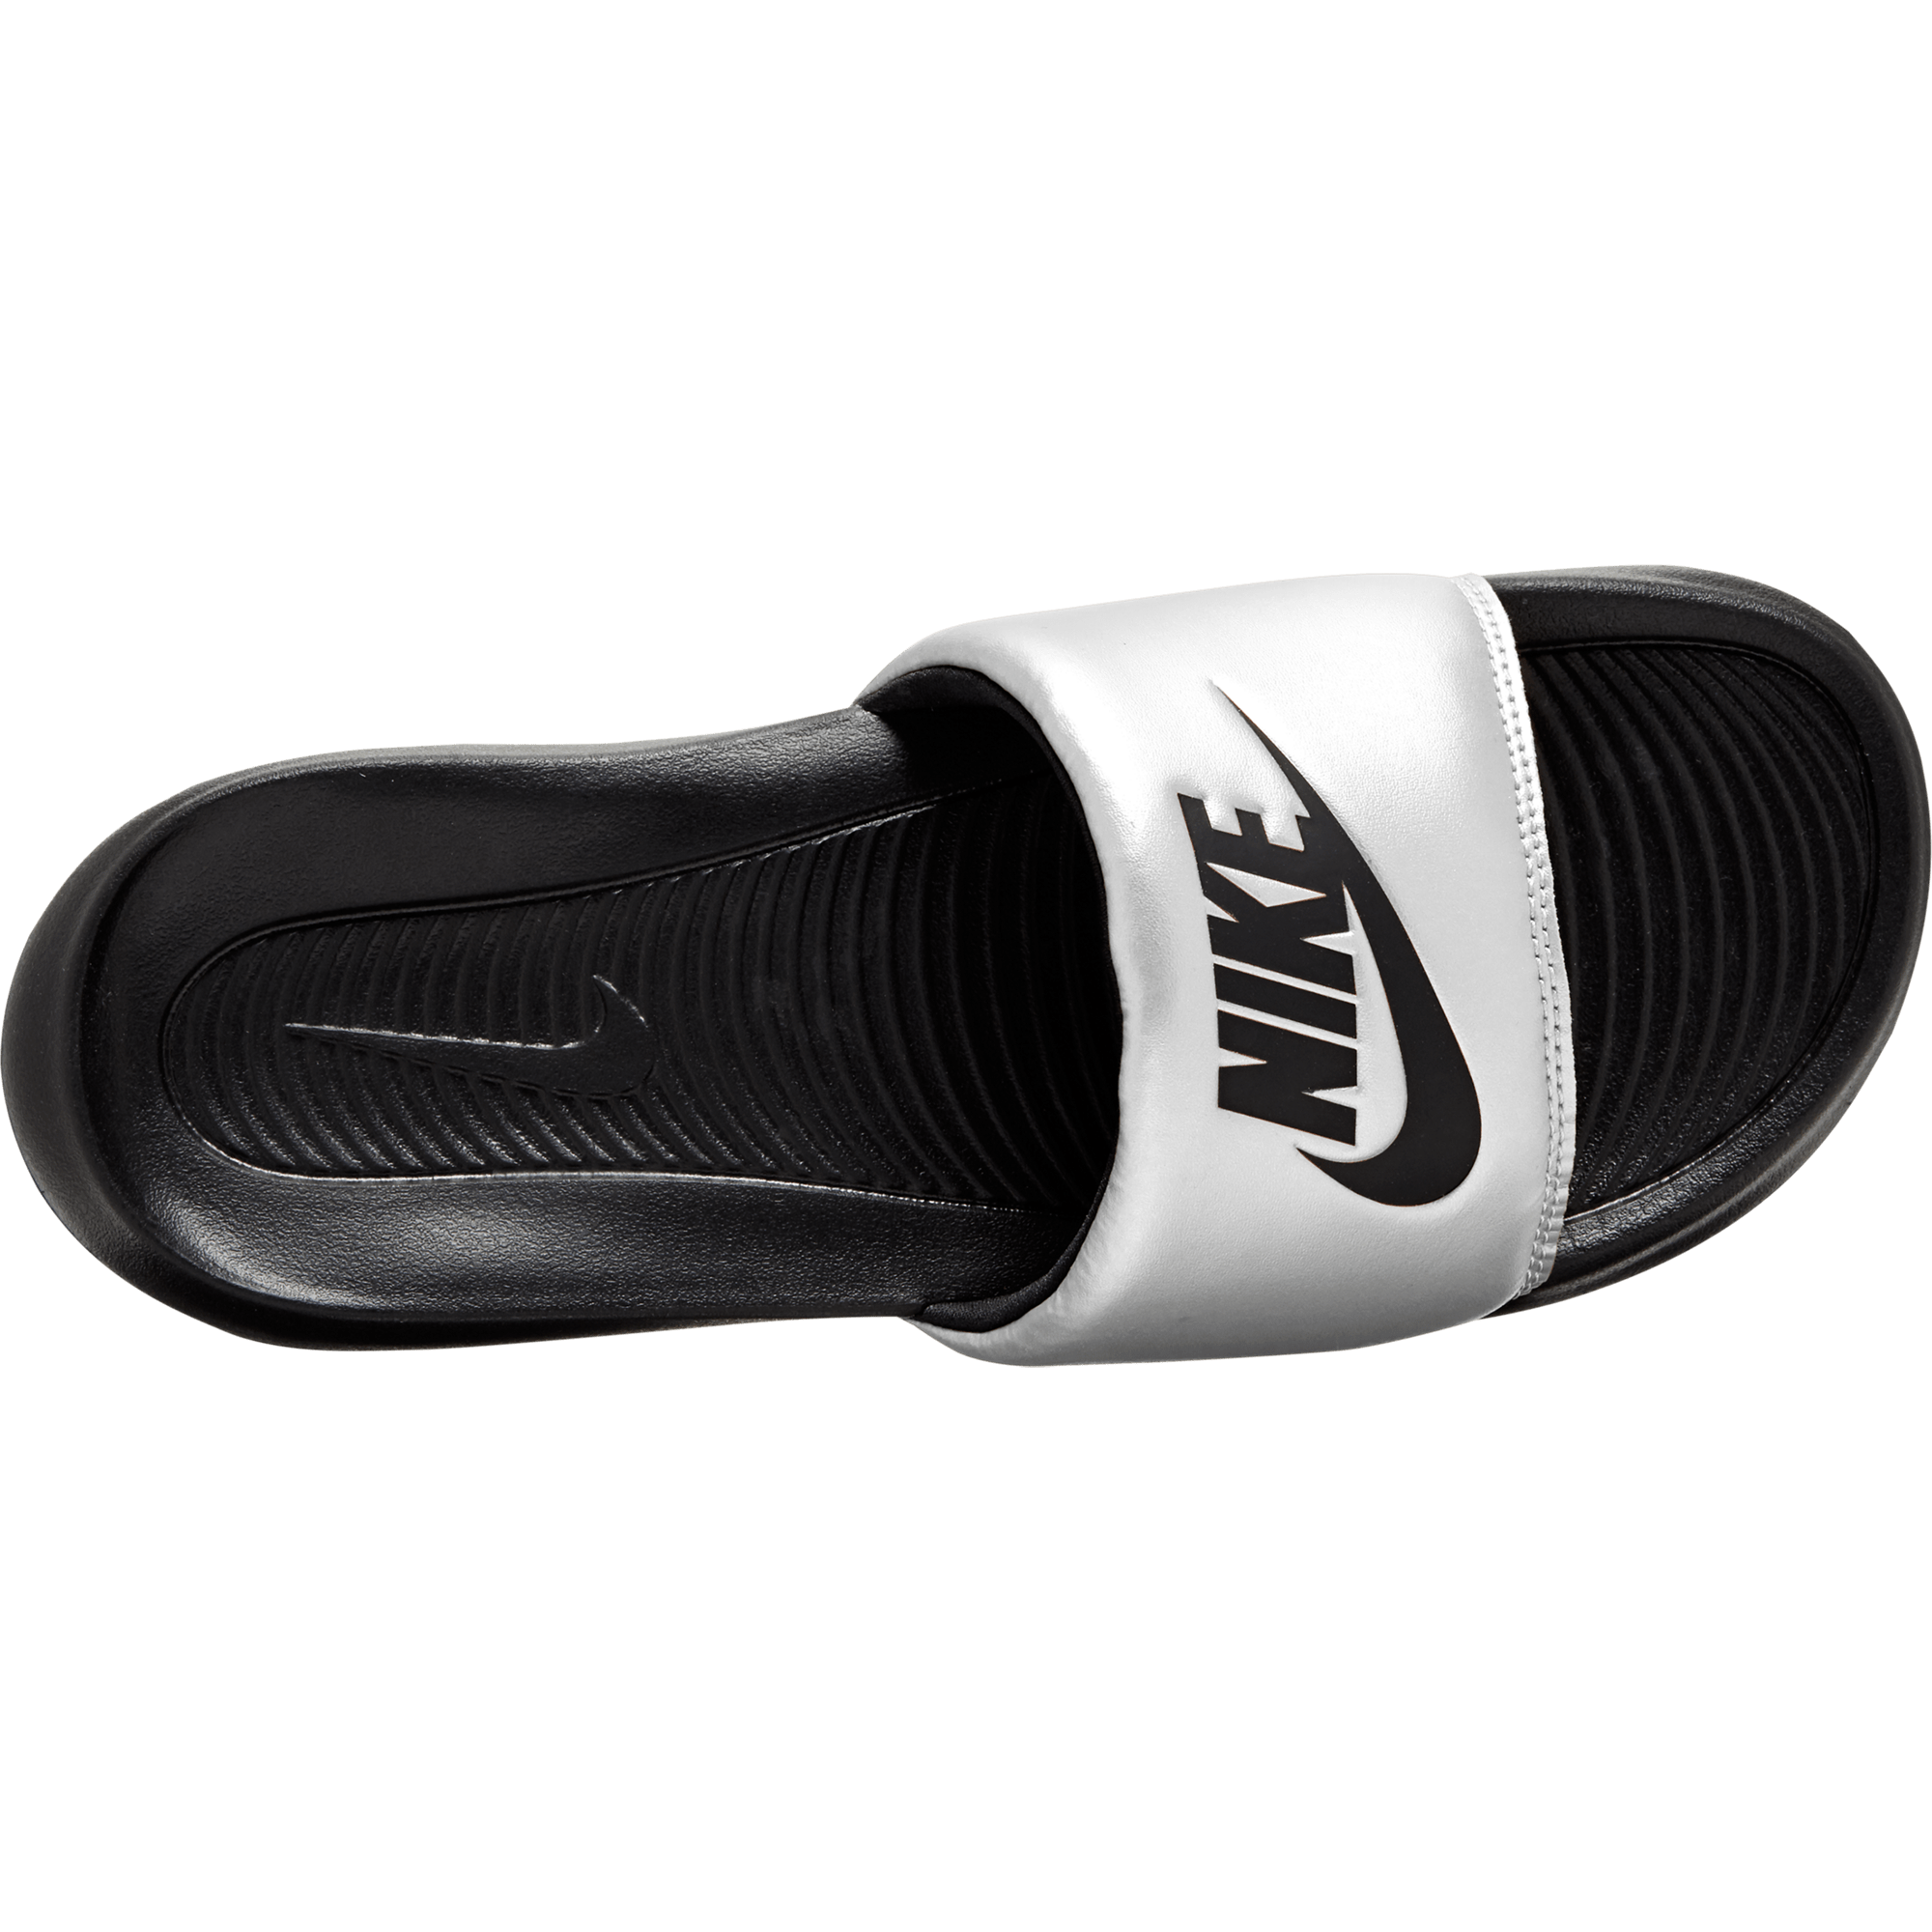 Nike Nike Victori One Slides - Women's